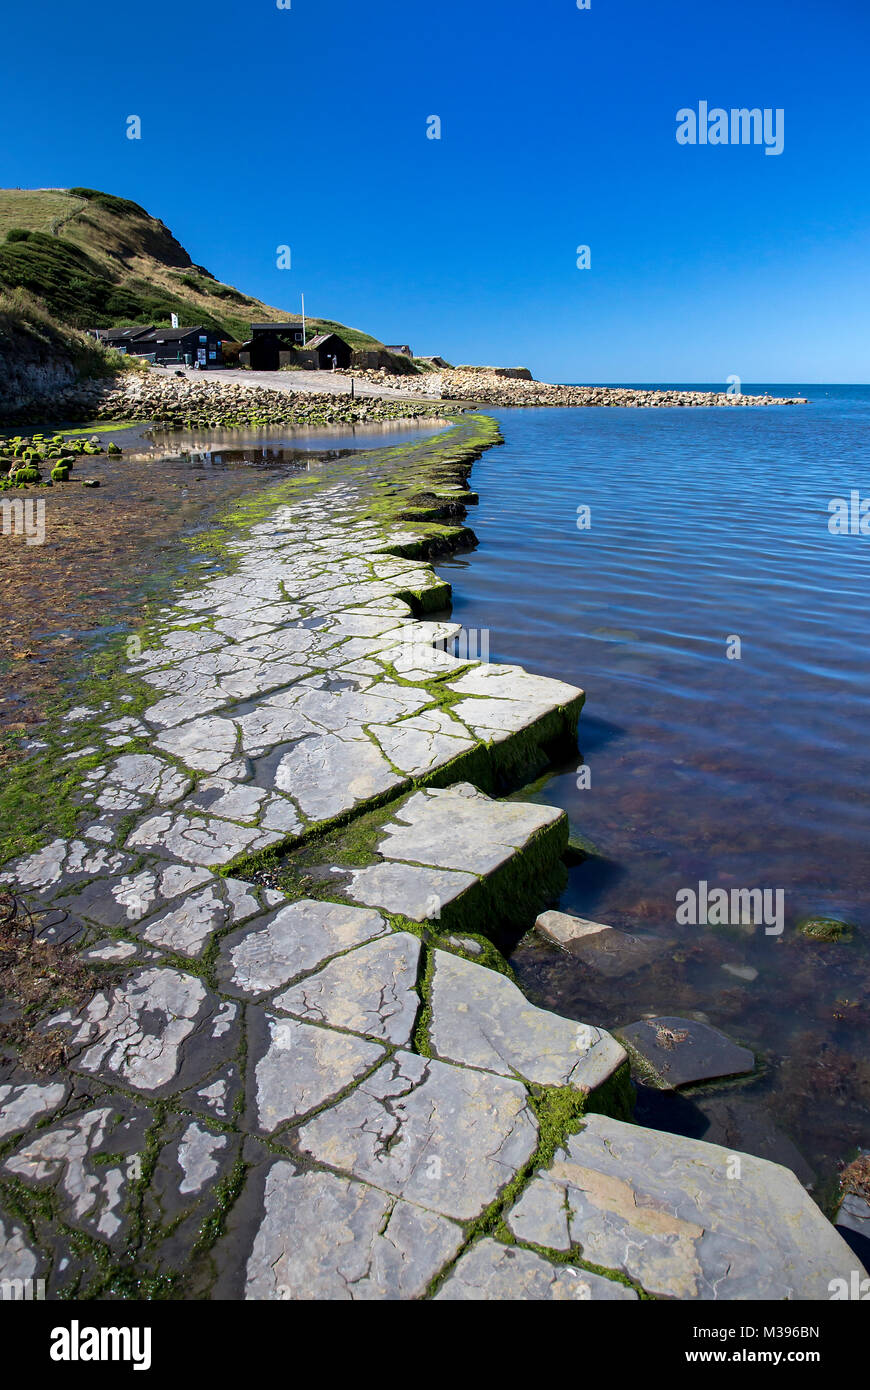 La source d'argile des pierres sur des corniches en Dorset Kimmeridge Bay Angleterre Banque D'Images